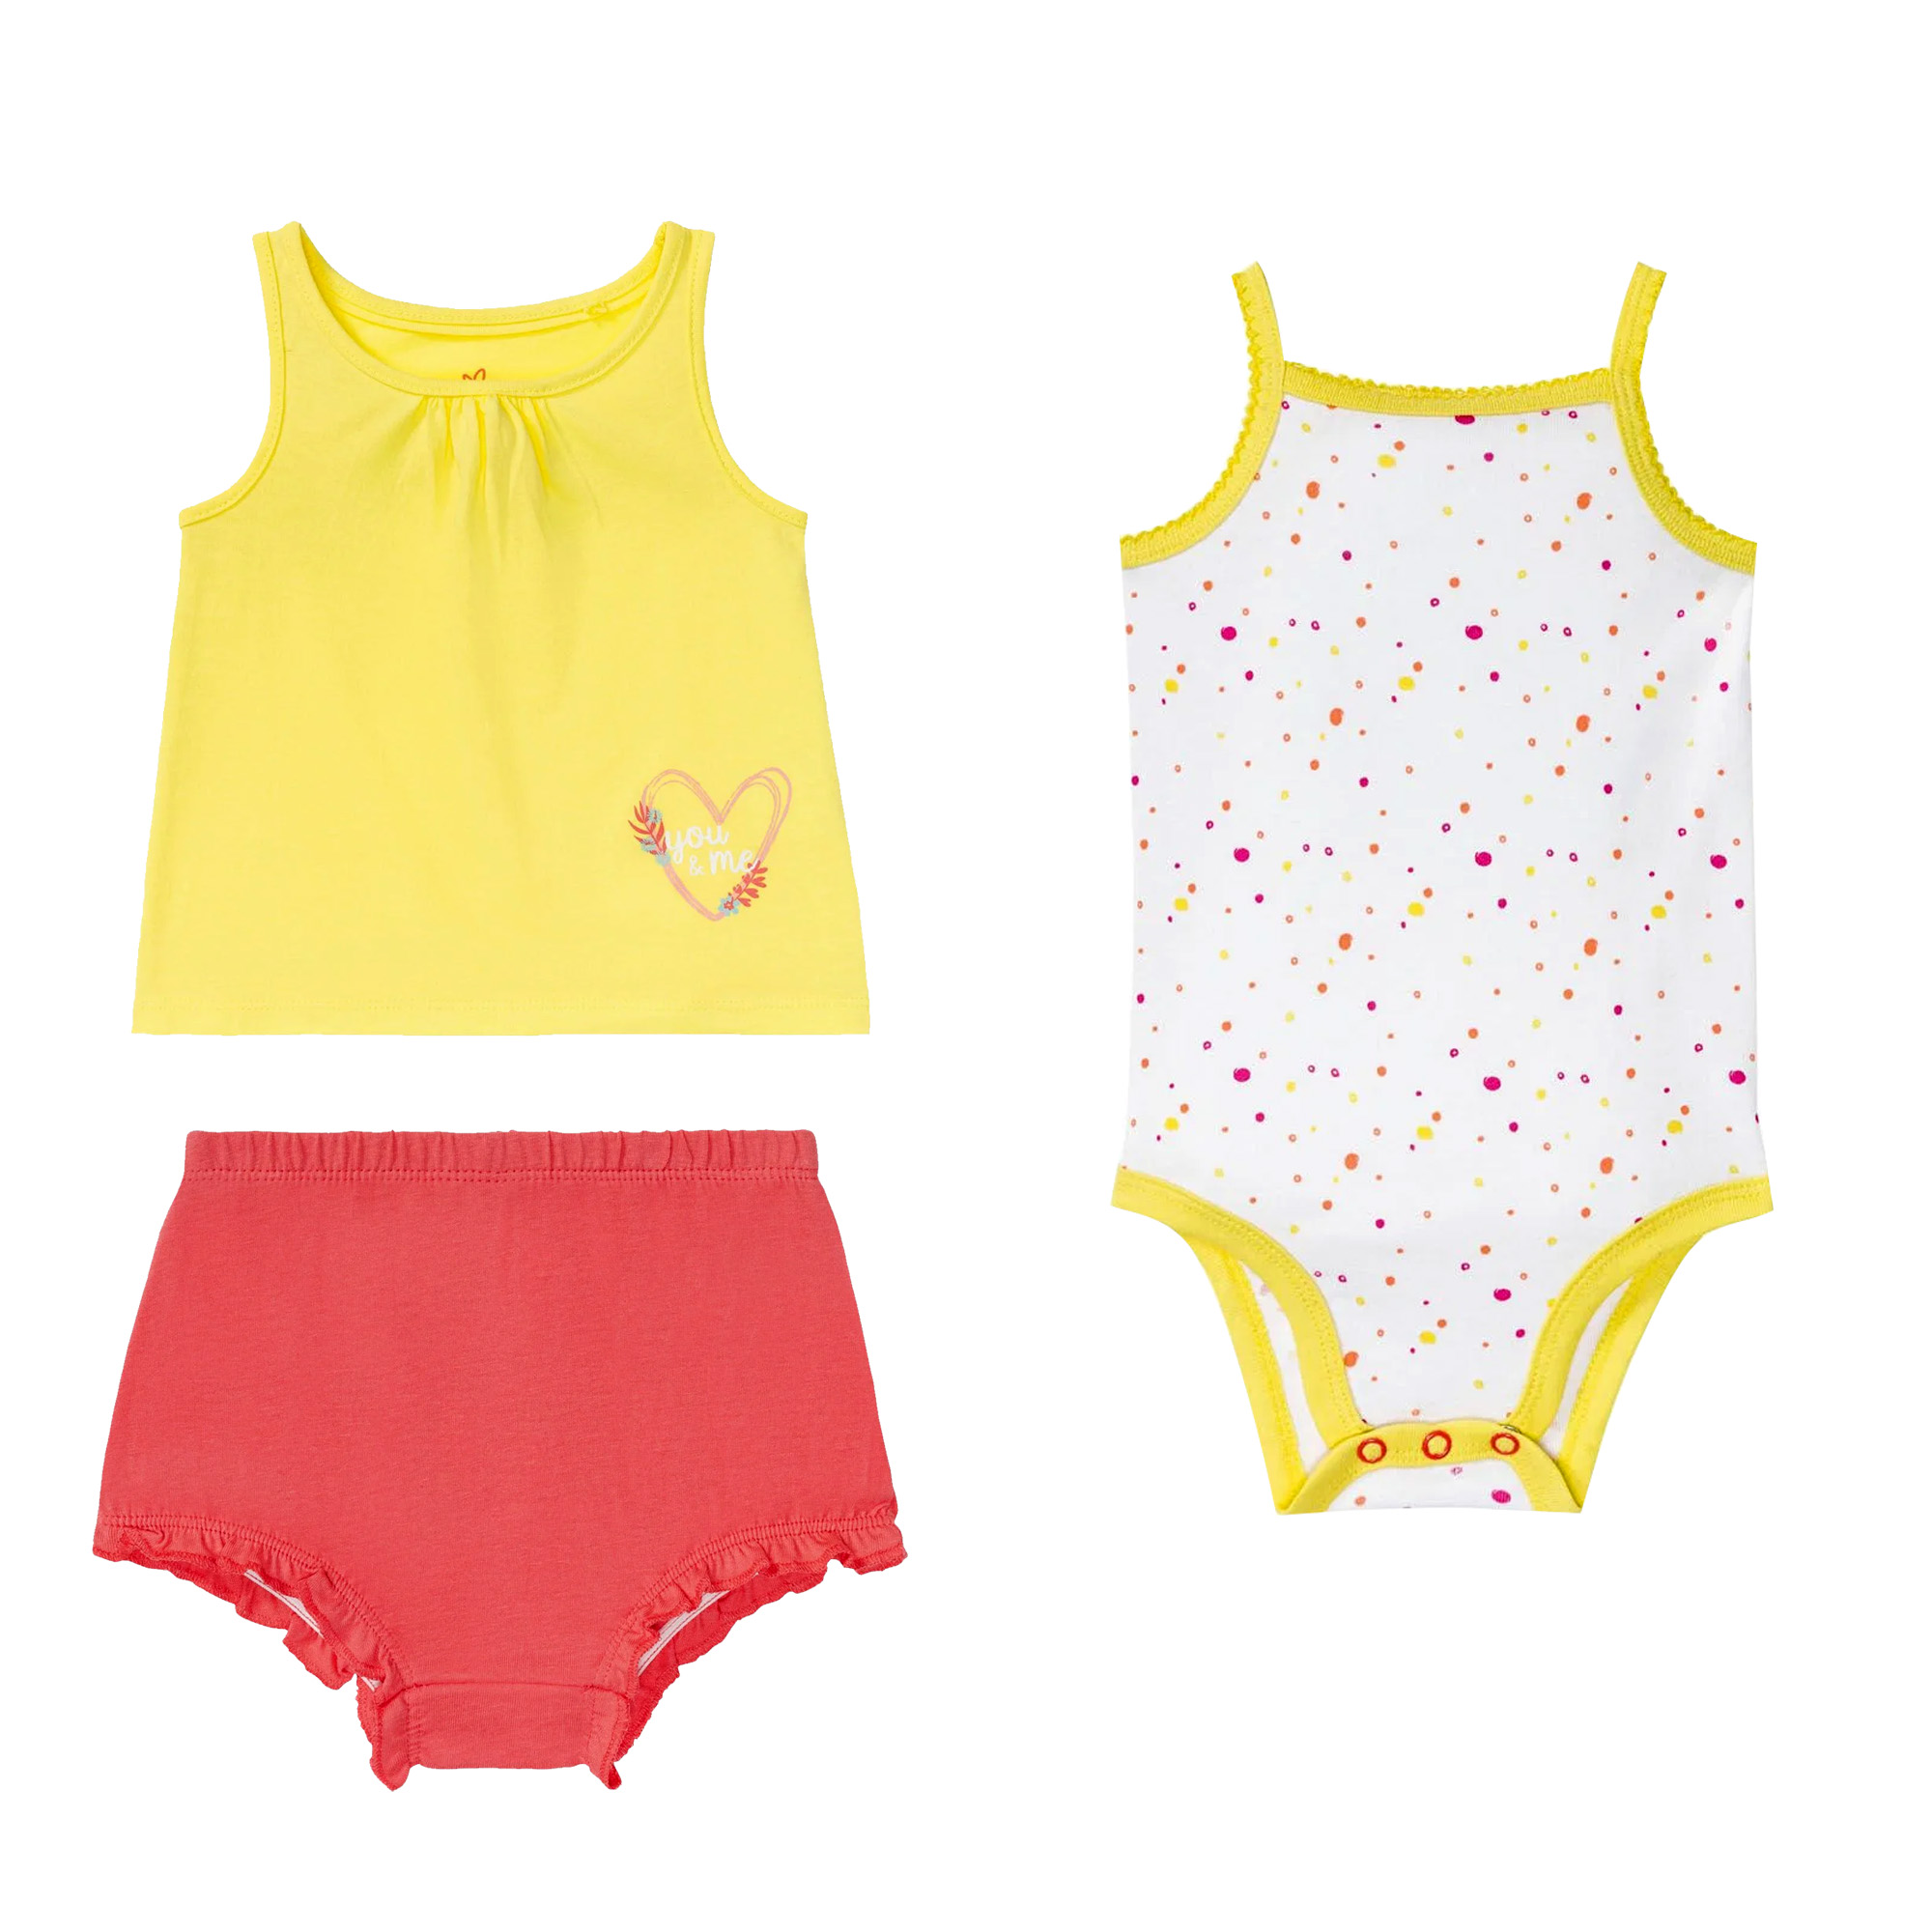 نقد و بررسی ست 3 تکه لباس نوزادی لوپیلو مدل lu26 توسط خریداران